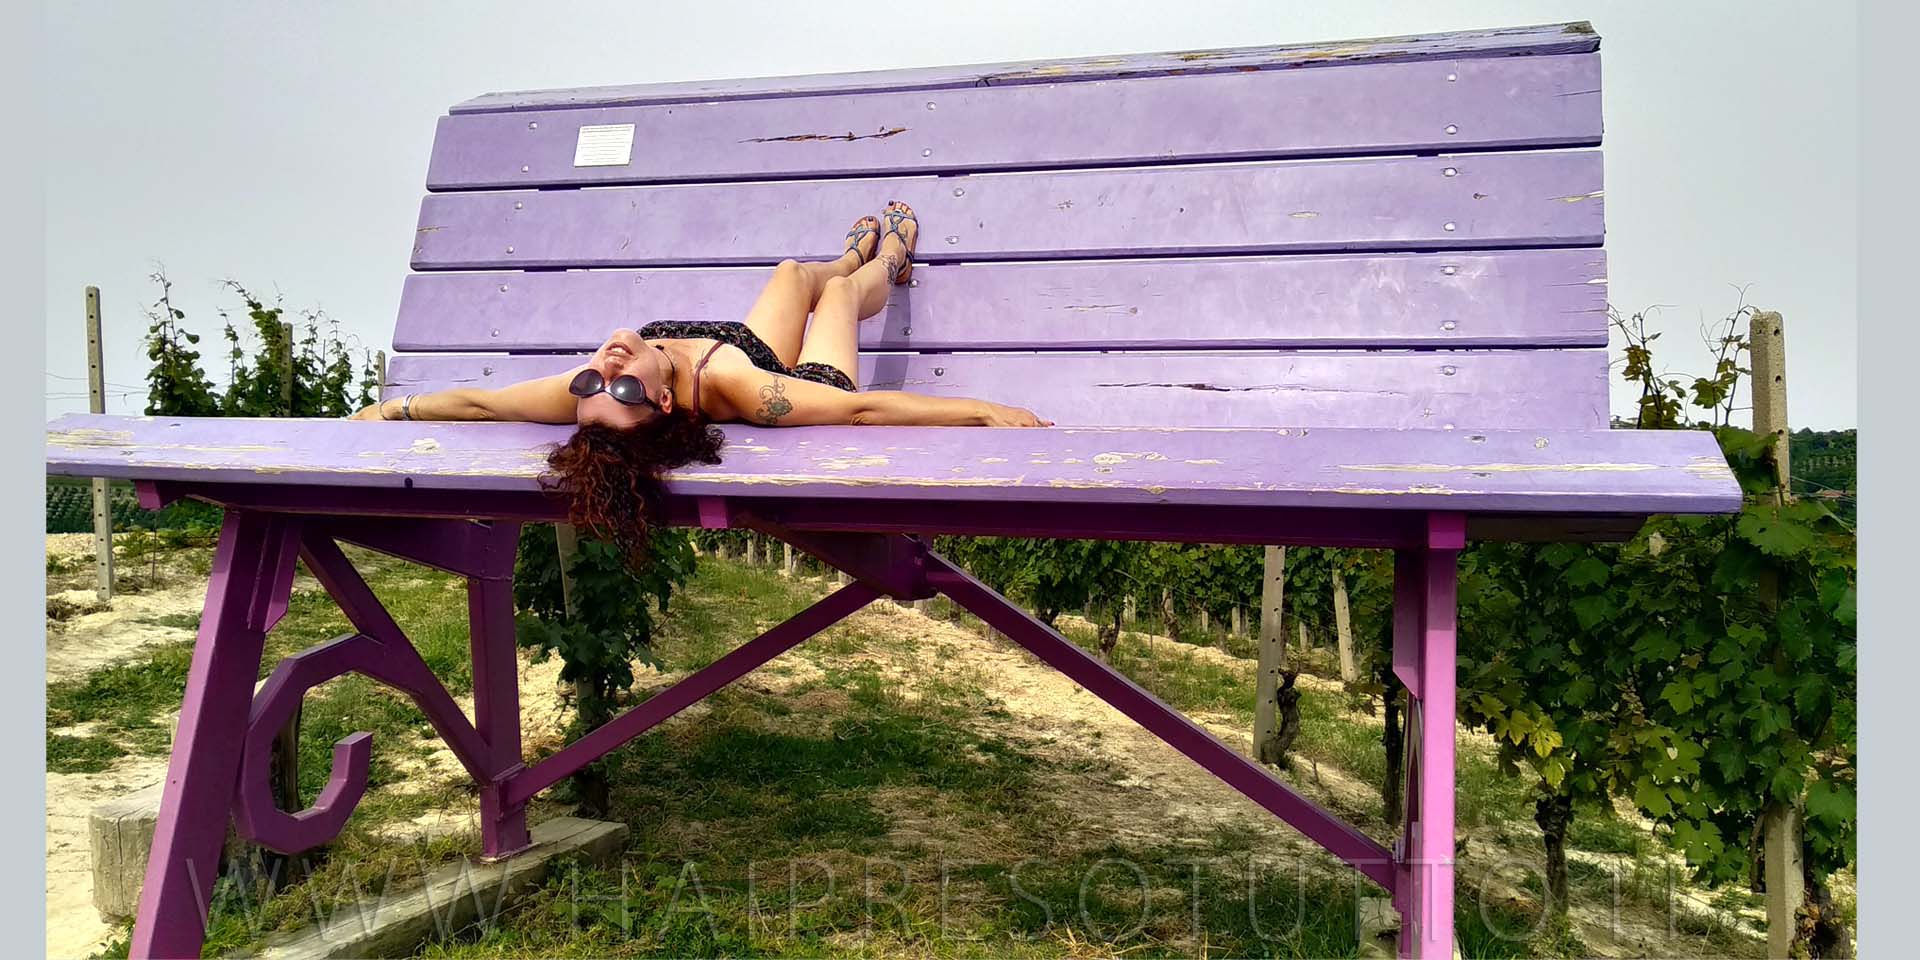 lara sulla panchina gigante viola